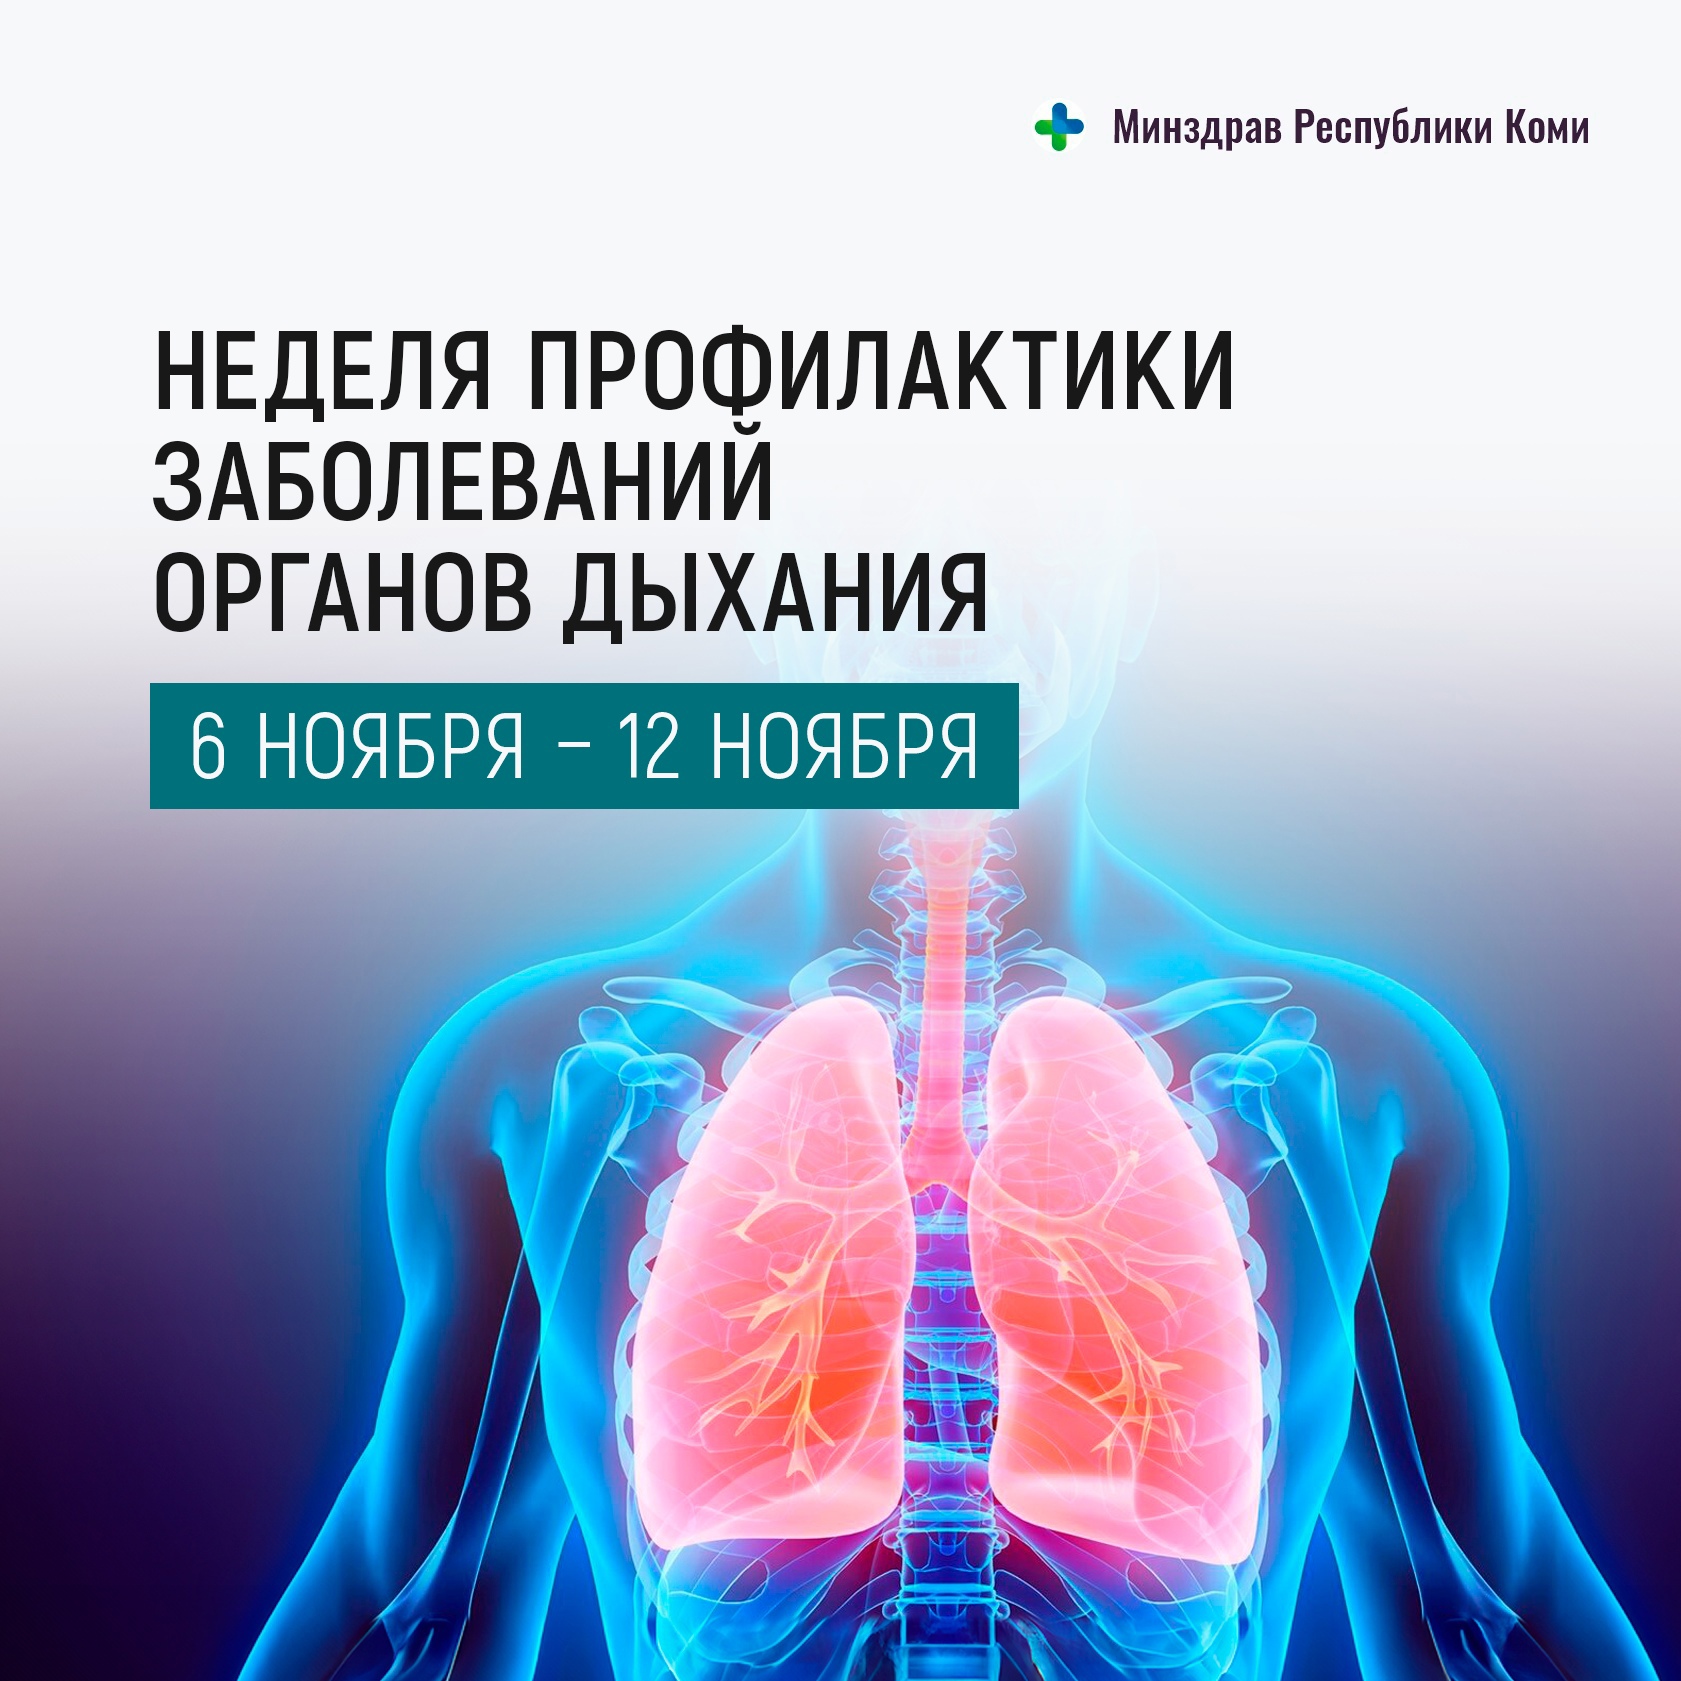 Неделя профилактики заболеваний органов дыхания.